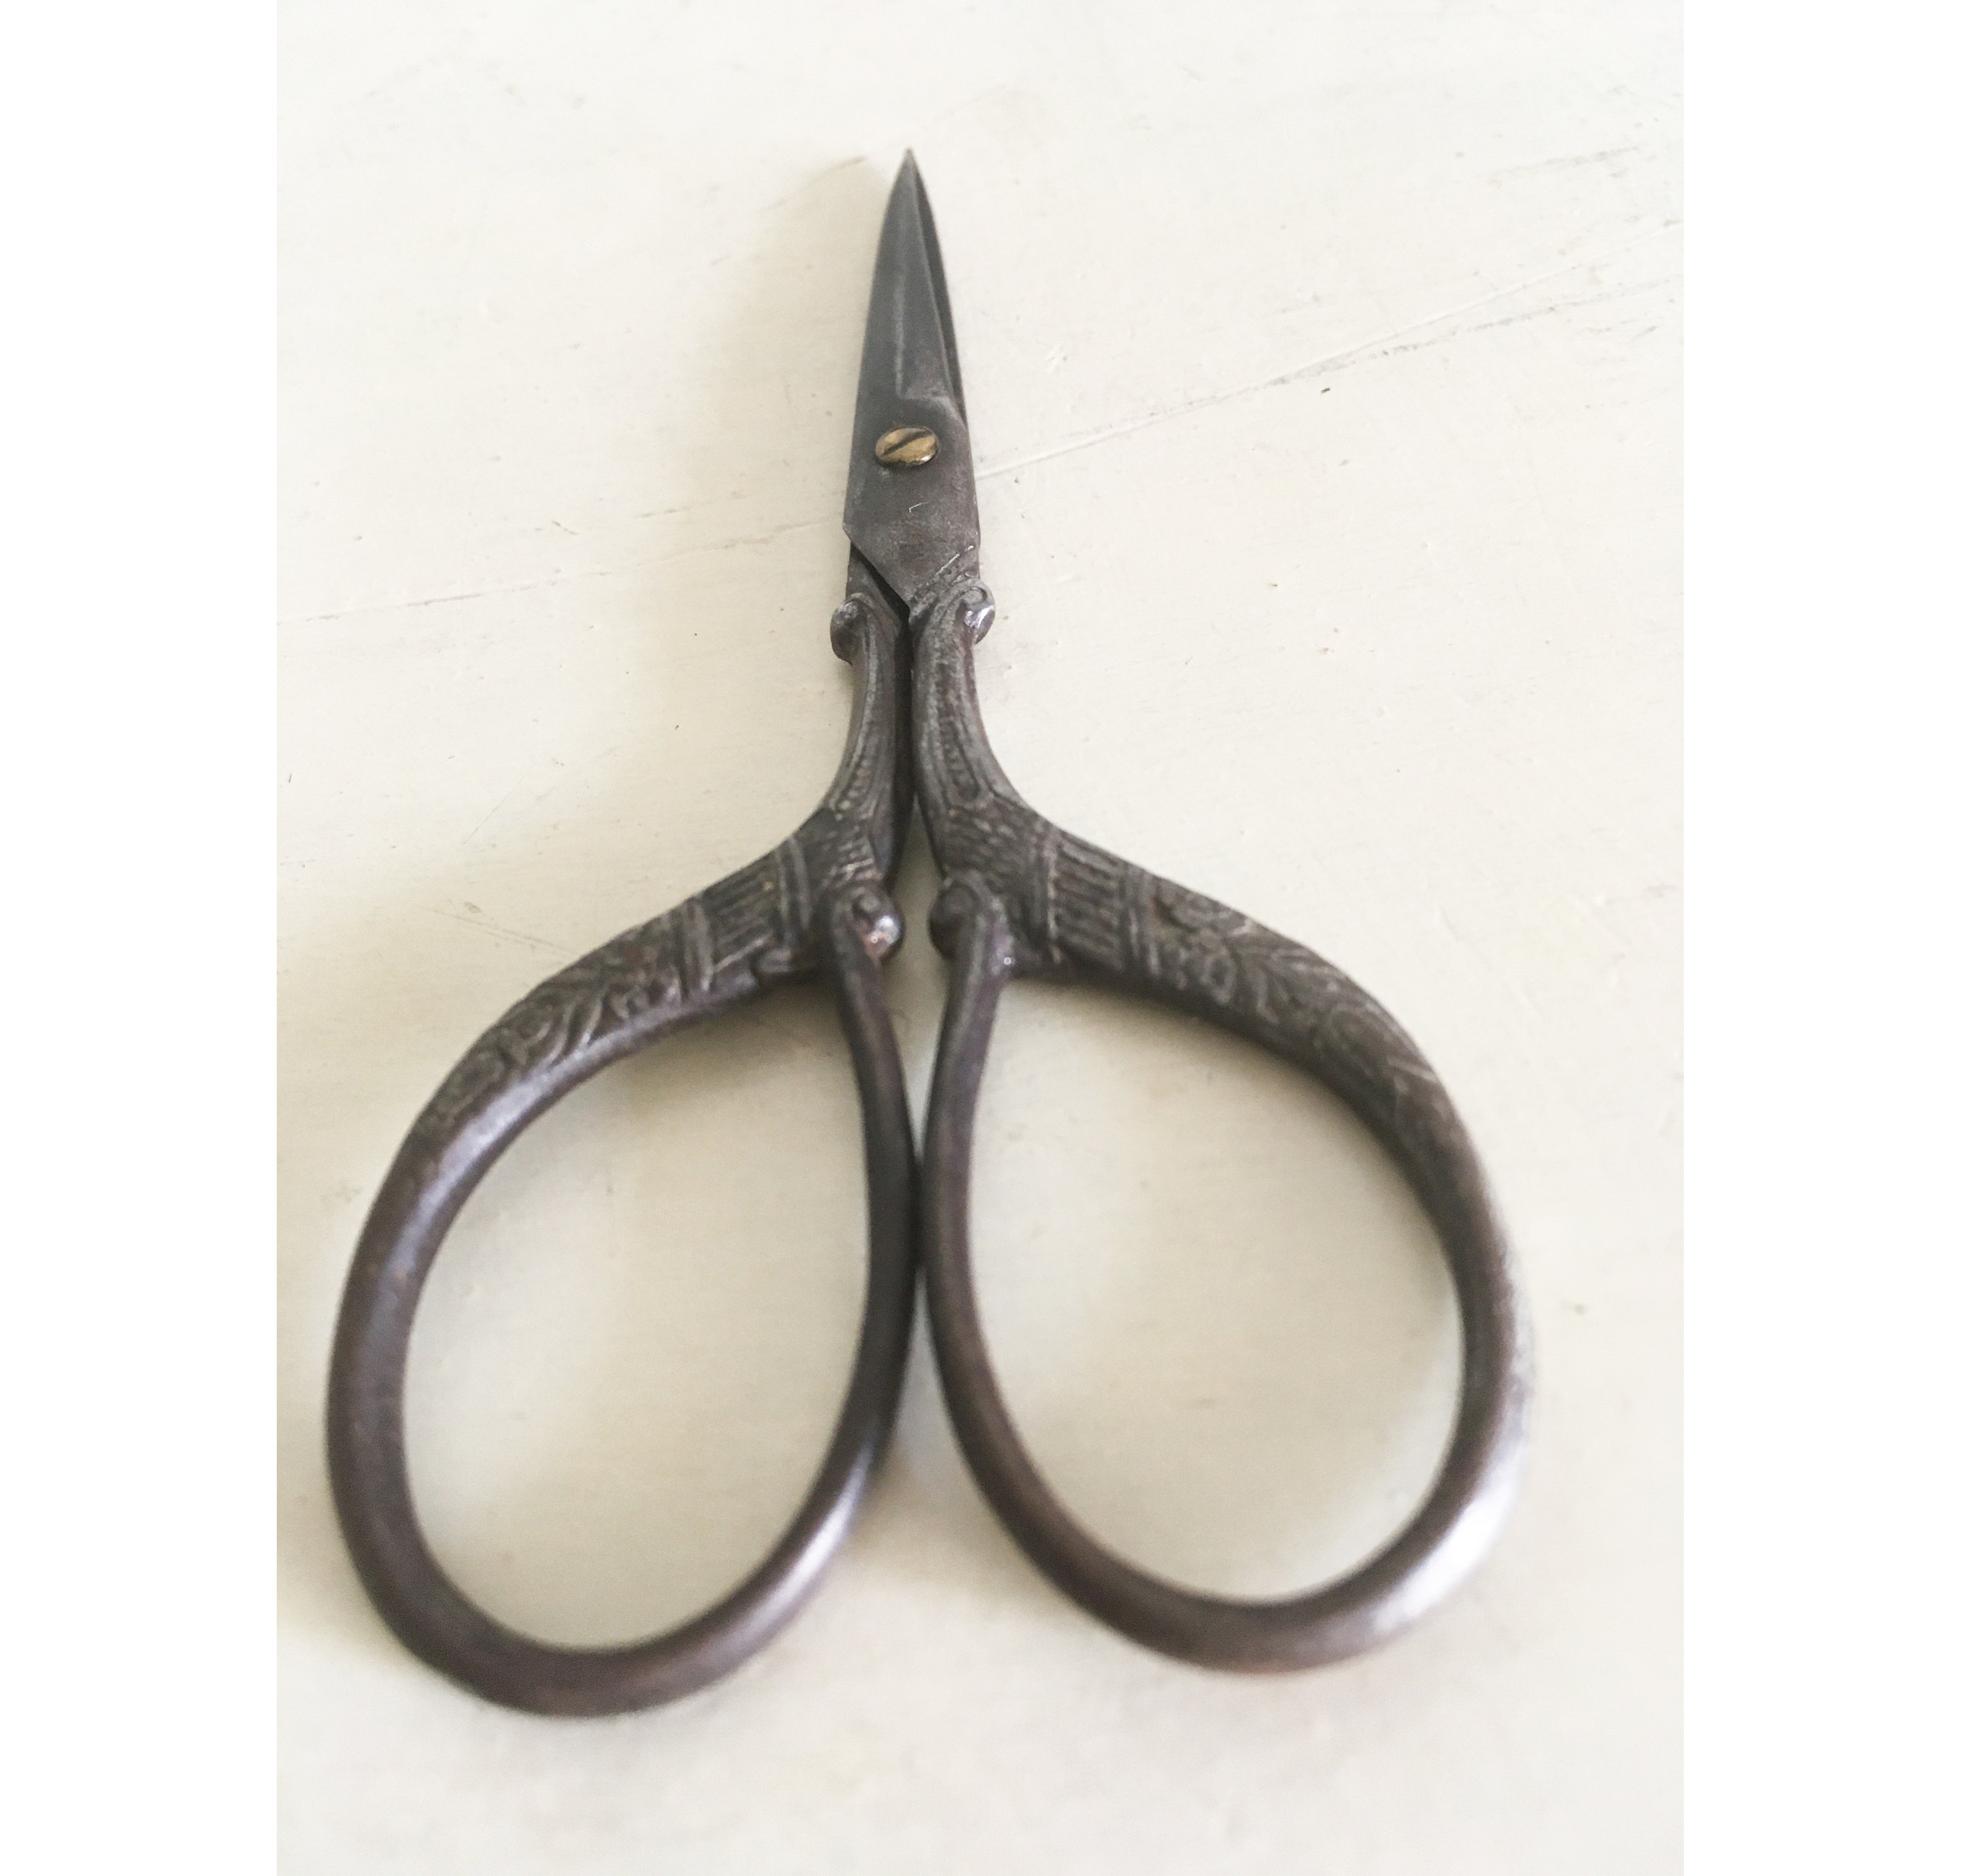 Antique J Wiss & Sons Tailor Scissors